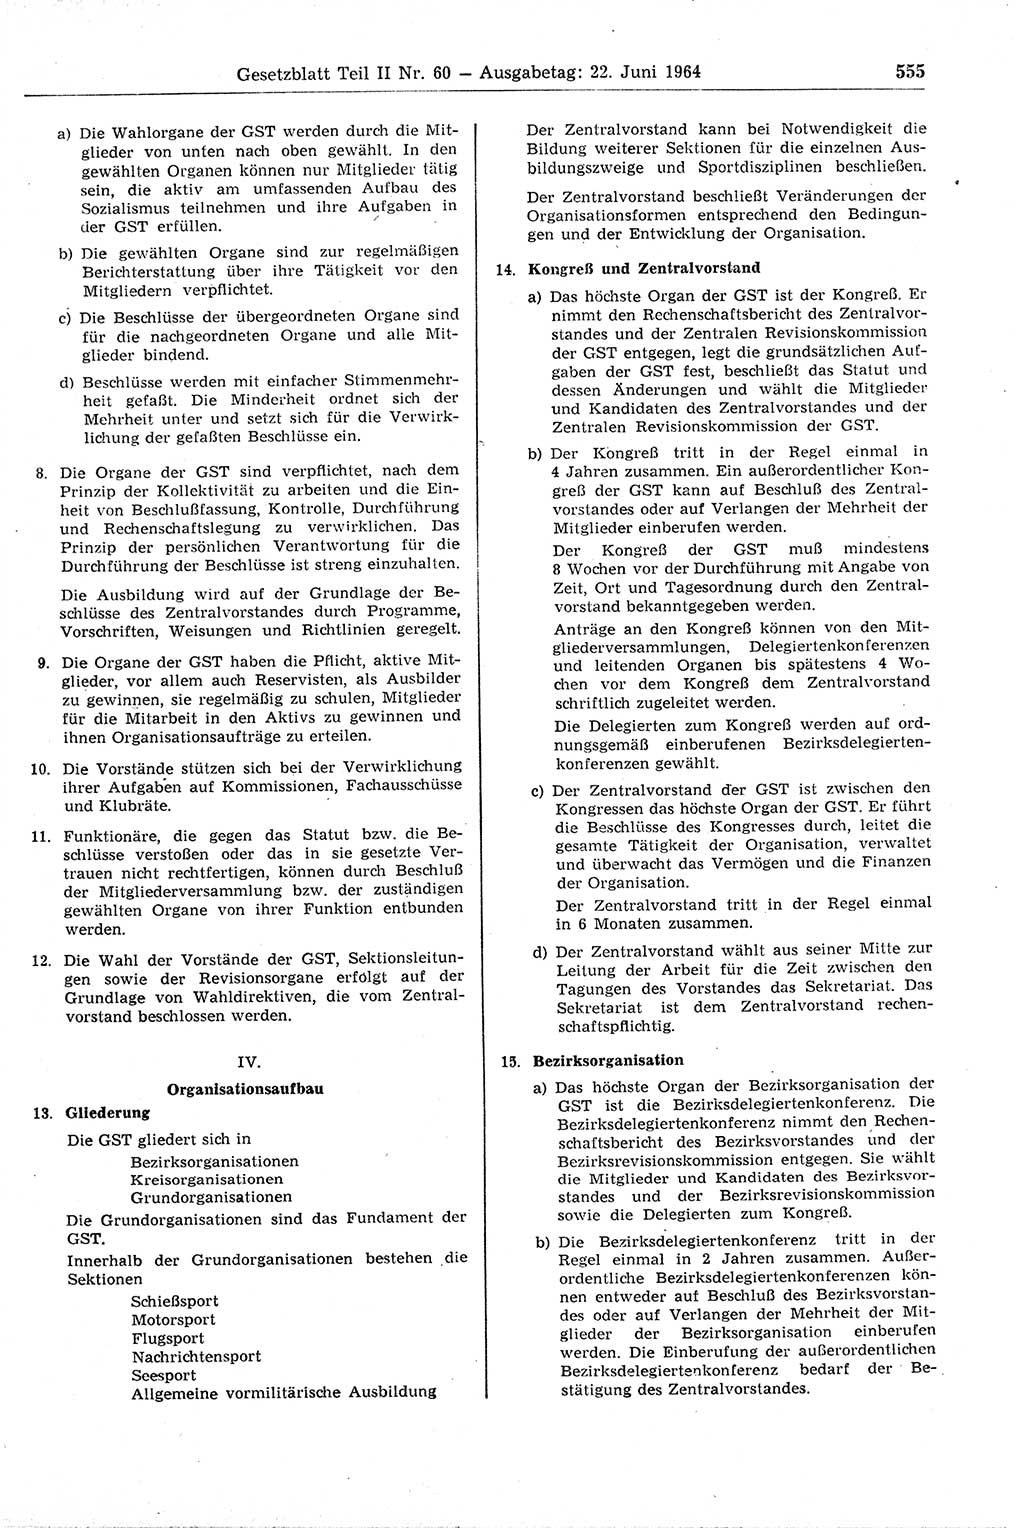 Gesetzblatt (GBl.) der Deutschen Demokratischen Republik (DDR) Teil ⅠⅠ 1964, Seite 555 (GBl. DDR ⅠⅠ 1964, S. 555)